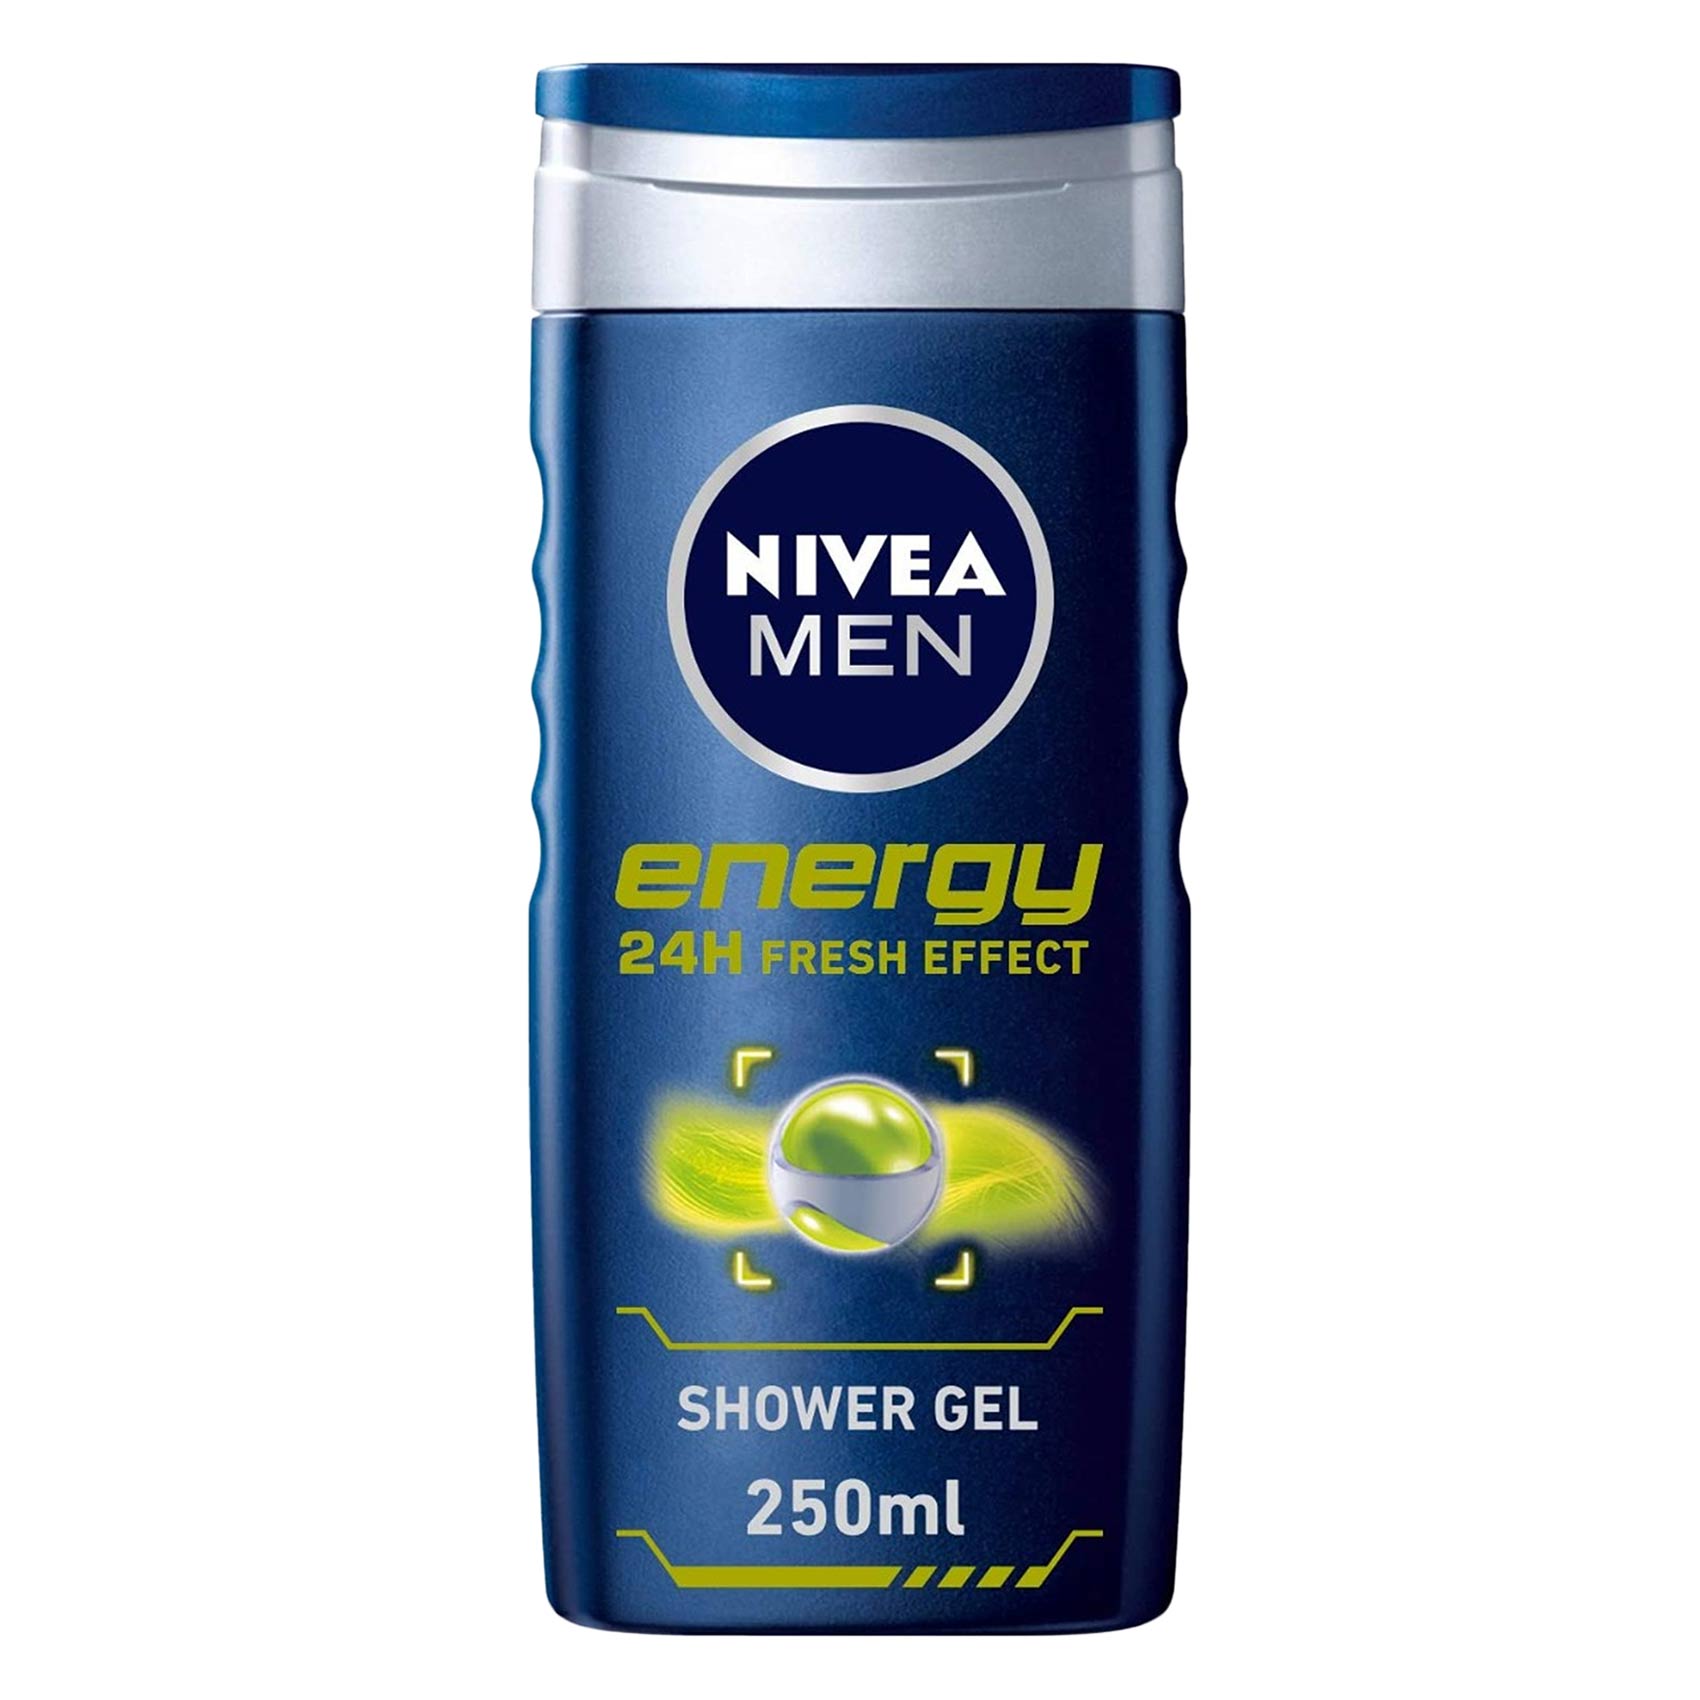 Nivea Energy Shower Gel 250ml